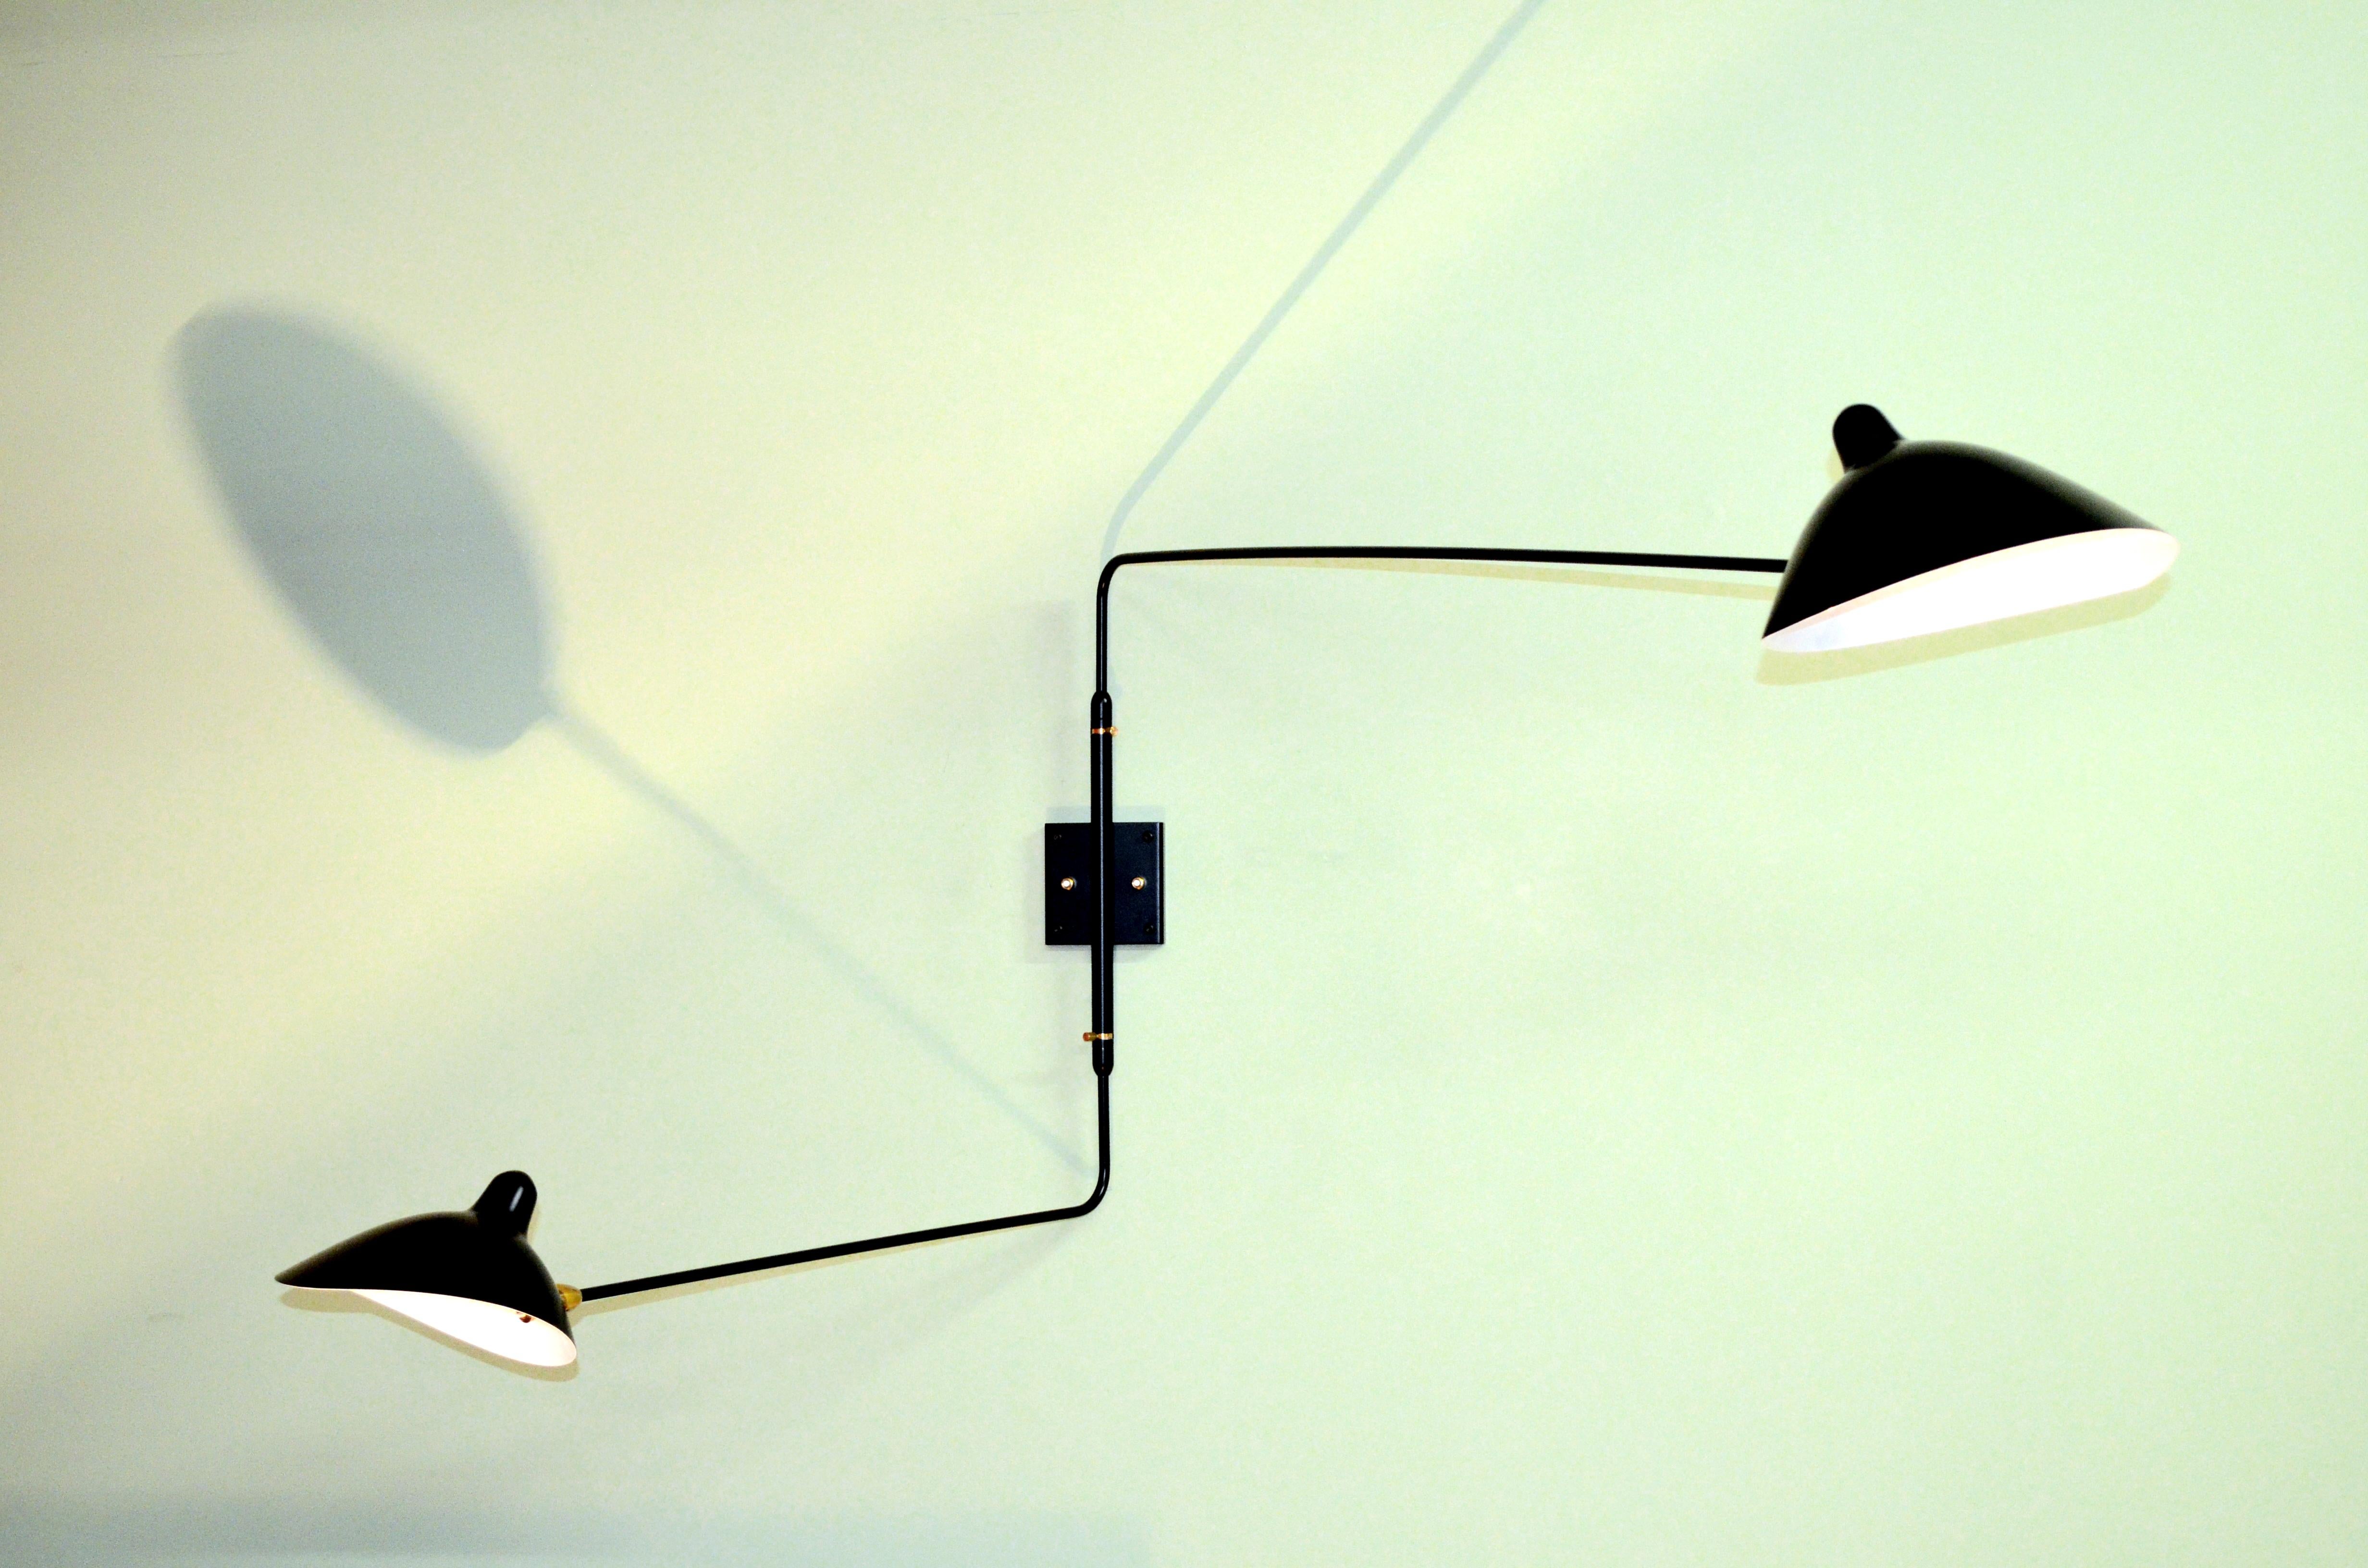 Une lampe pratique capable d'éclairer deux zones en même temps. Les bras tournent indépendamment tandis que les abat-jours s'inclinent et tournent d'eux-mêmes. Un double interrupteur situé sur l'emplacement de montage permet de contrôler